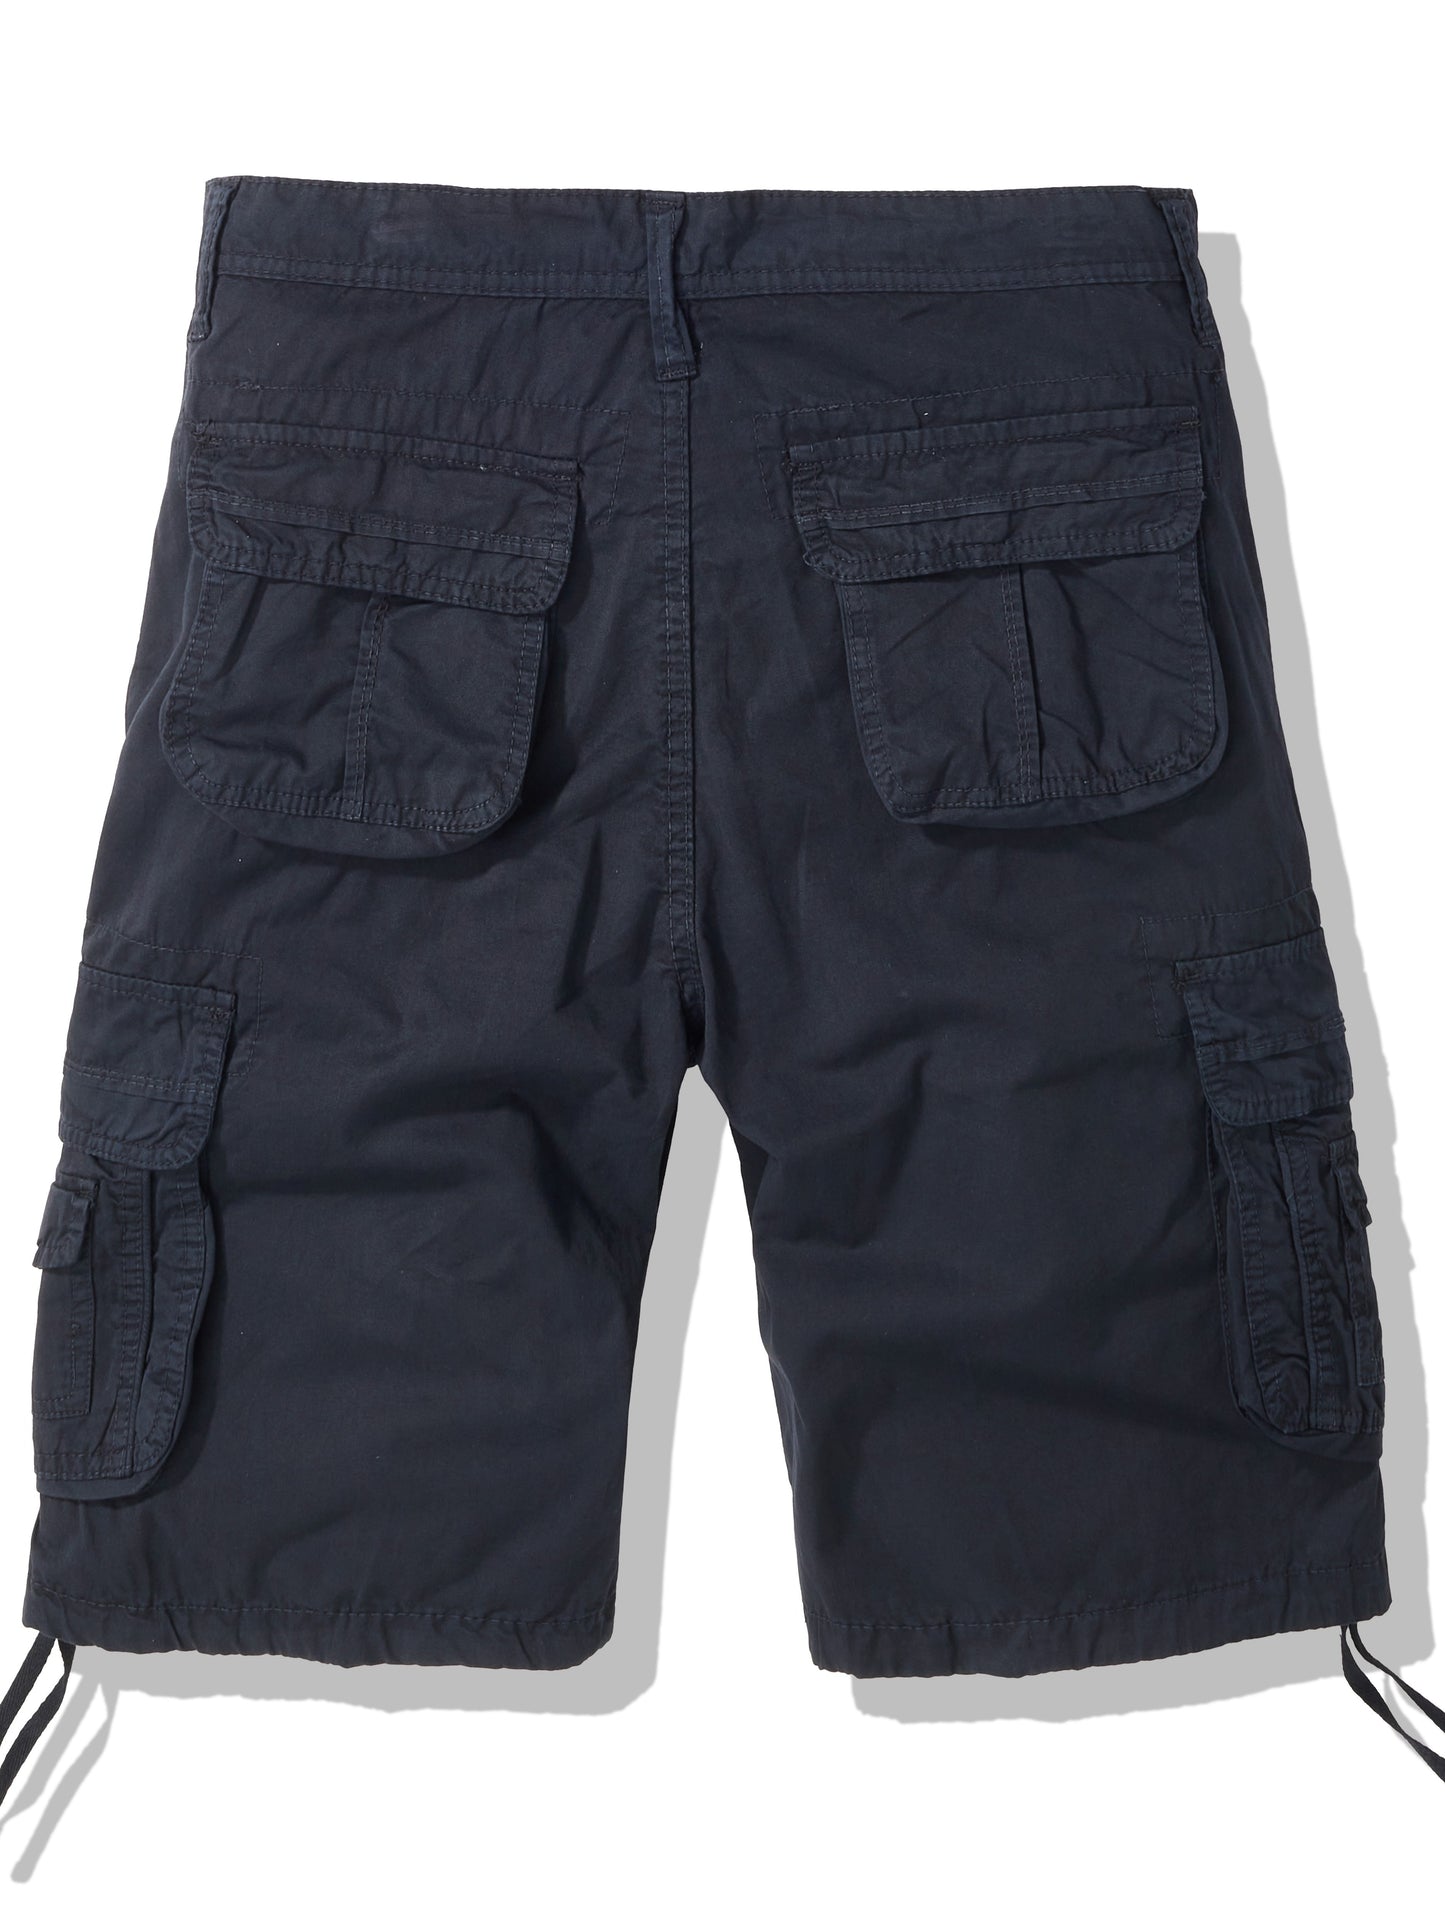 100% Cotton Breathable Men's Cargo Short Pants